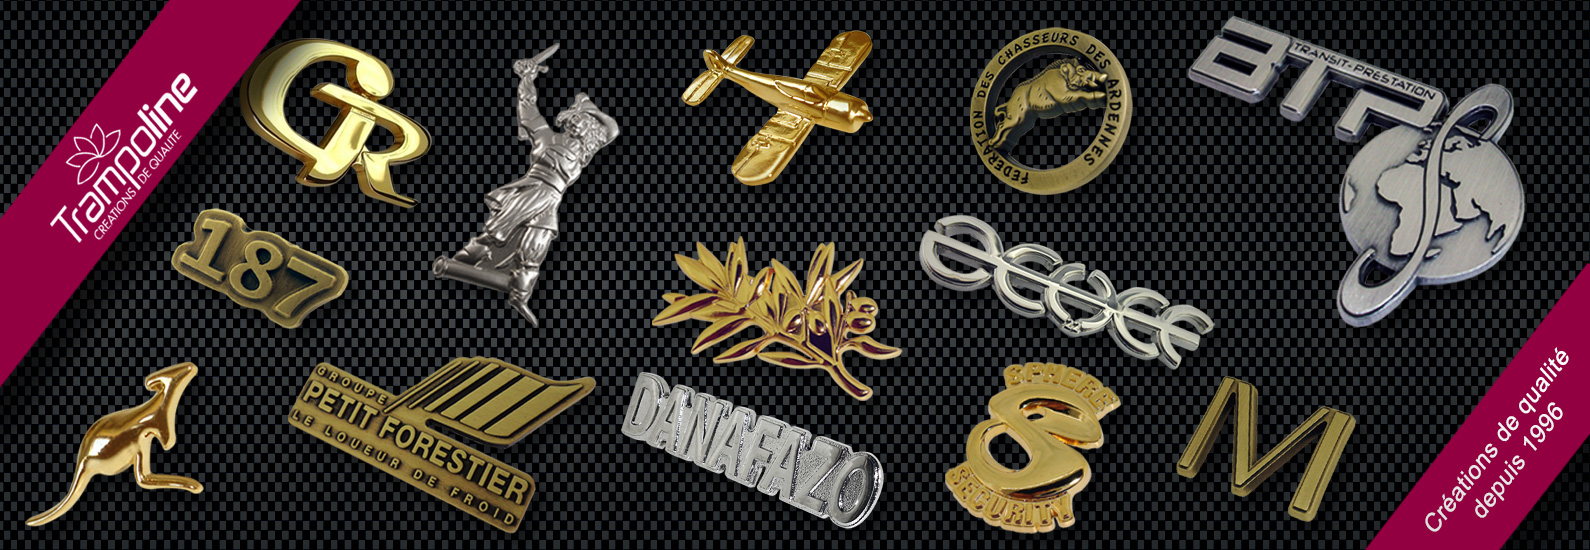 4 realisation insigne pompier militaire pin's en zamac pin's broche luxe en metal personnalise epinglette